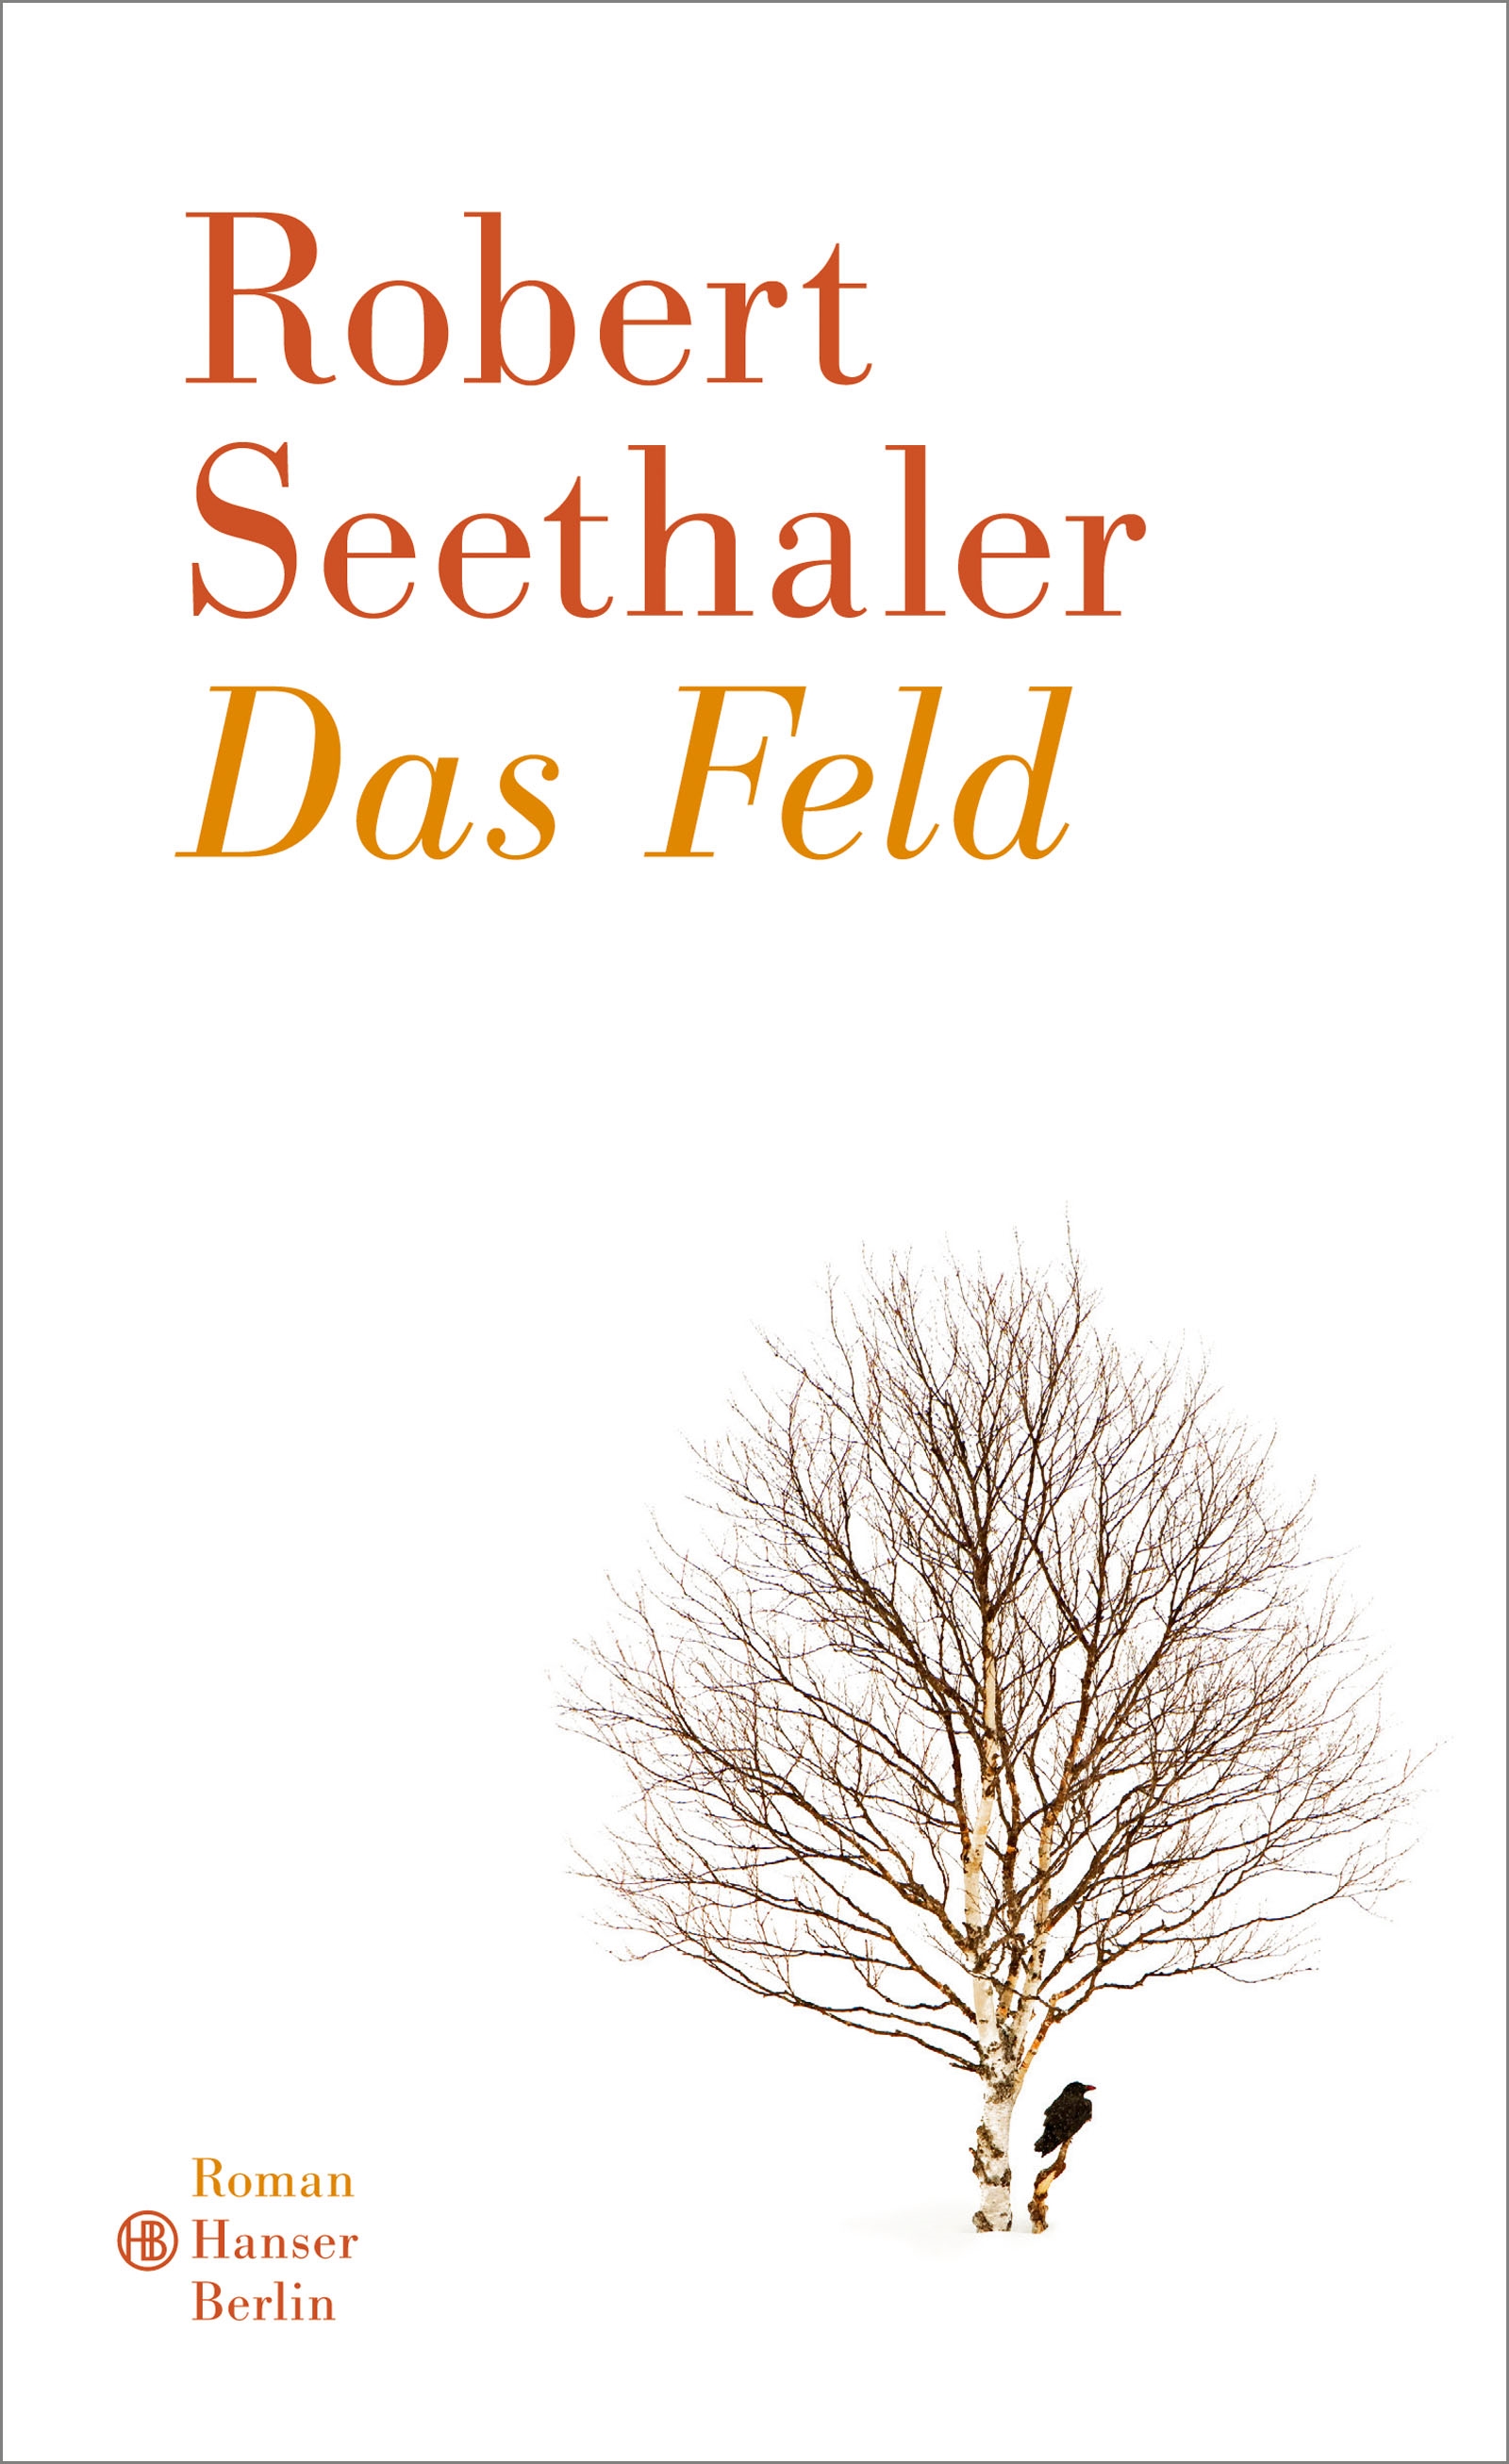 Robert Seethaler, Das Feld